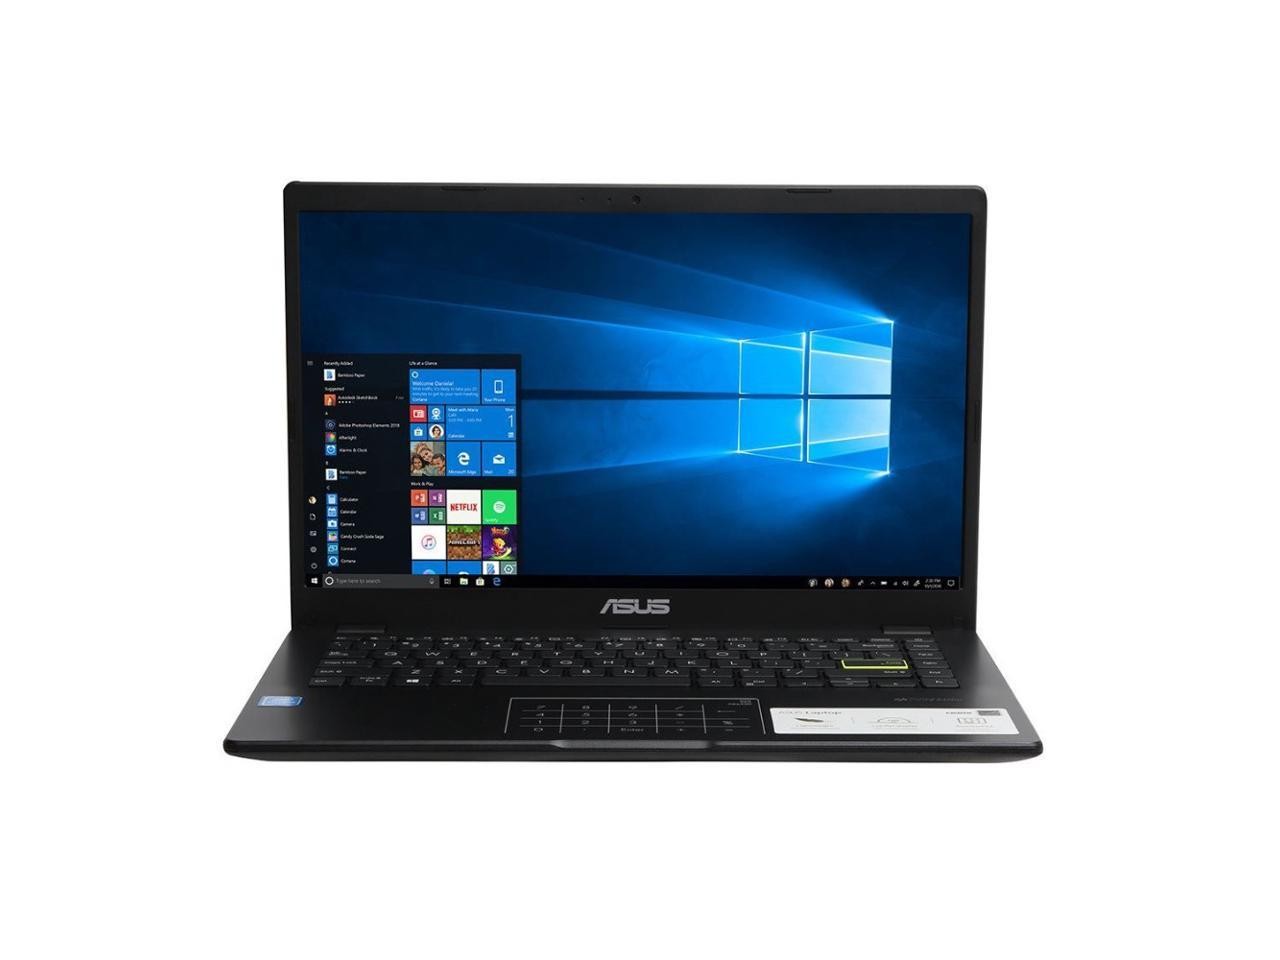 computadoras y laptops - 


Asus E410M | Intel Pentium | 4GB RAM |128GB SSD - 1 año de Garantia